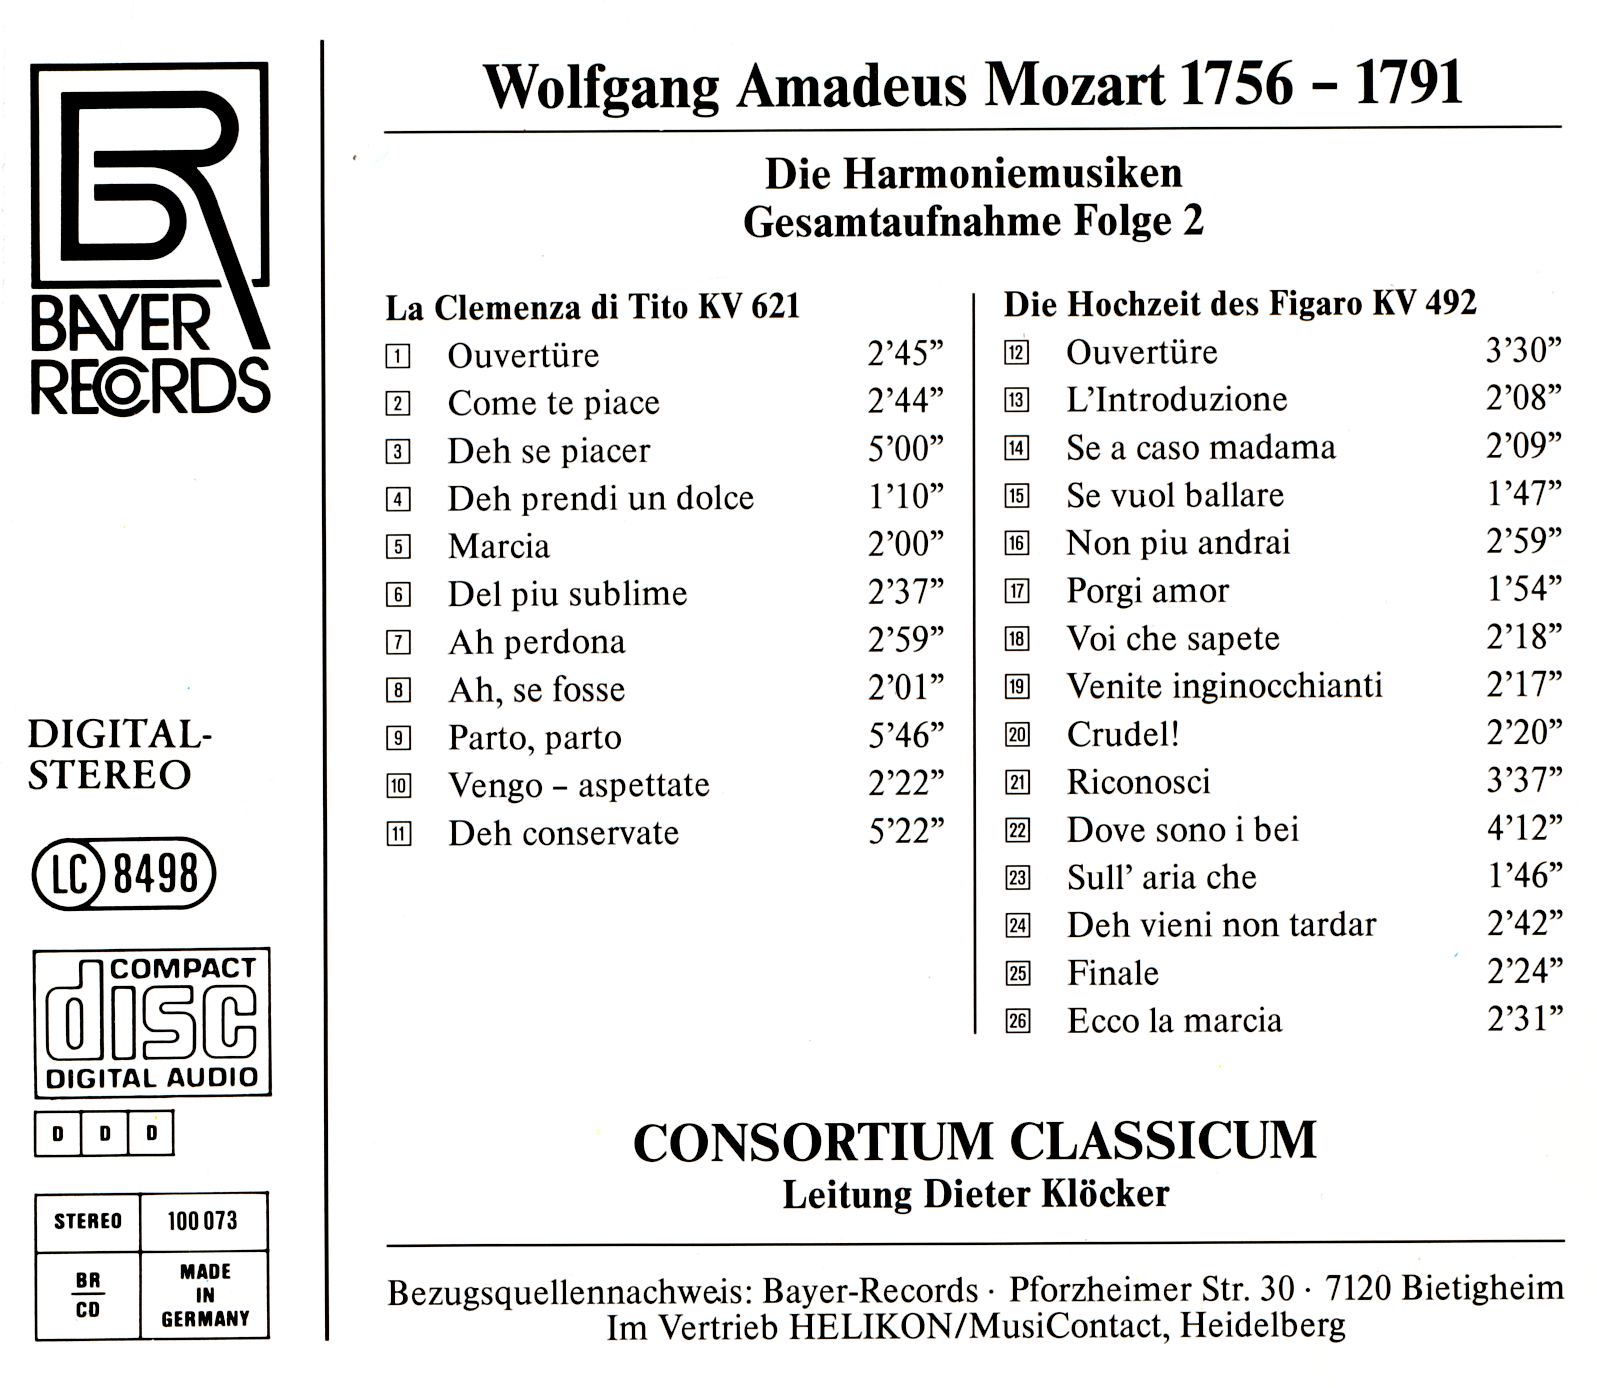 Wolfgang Amadeus Mozart - Harmoniemusiken Folge 2